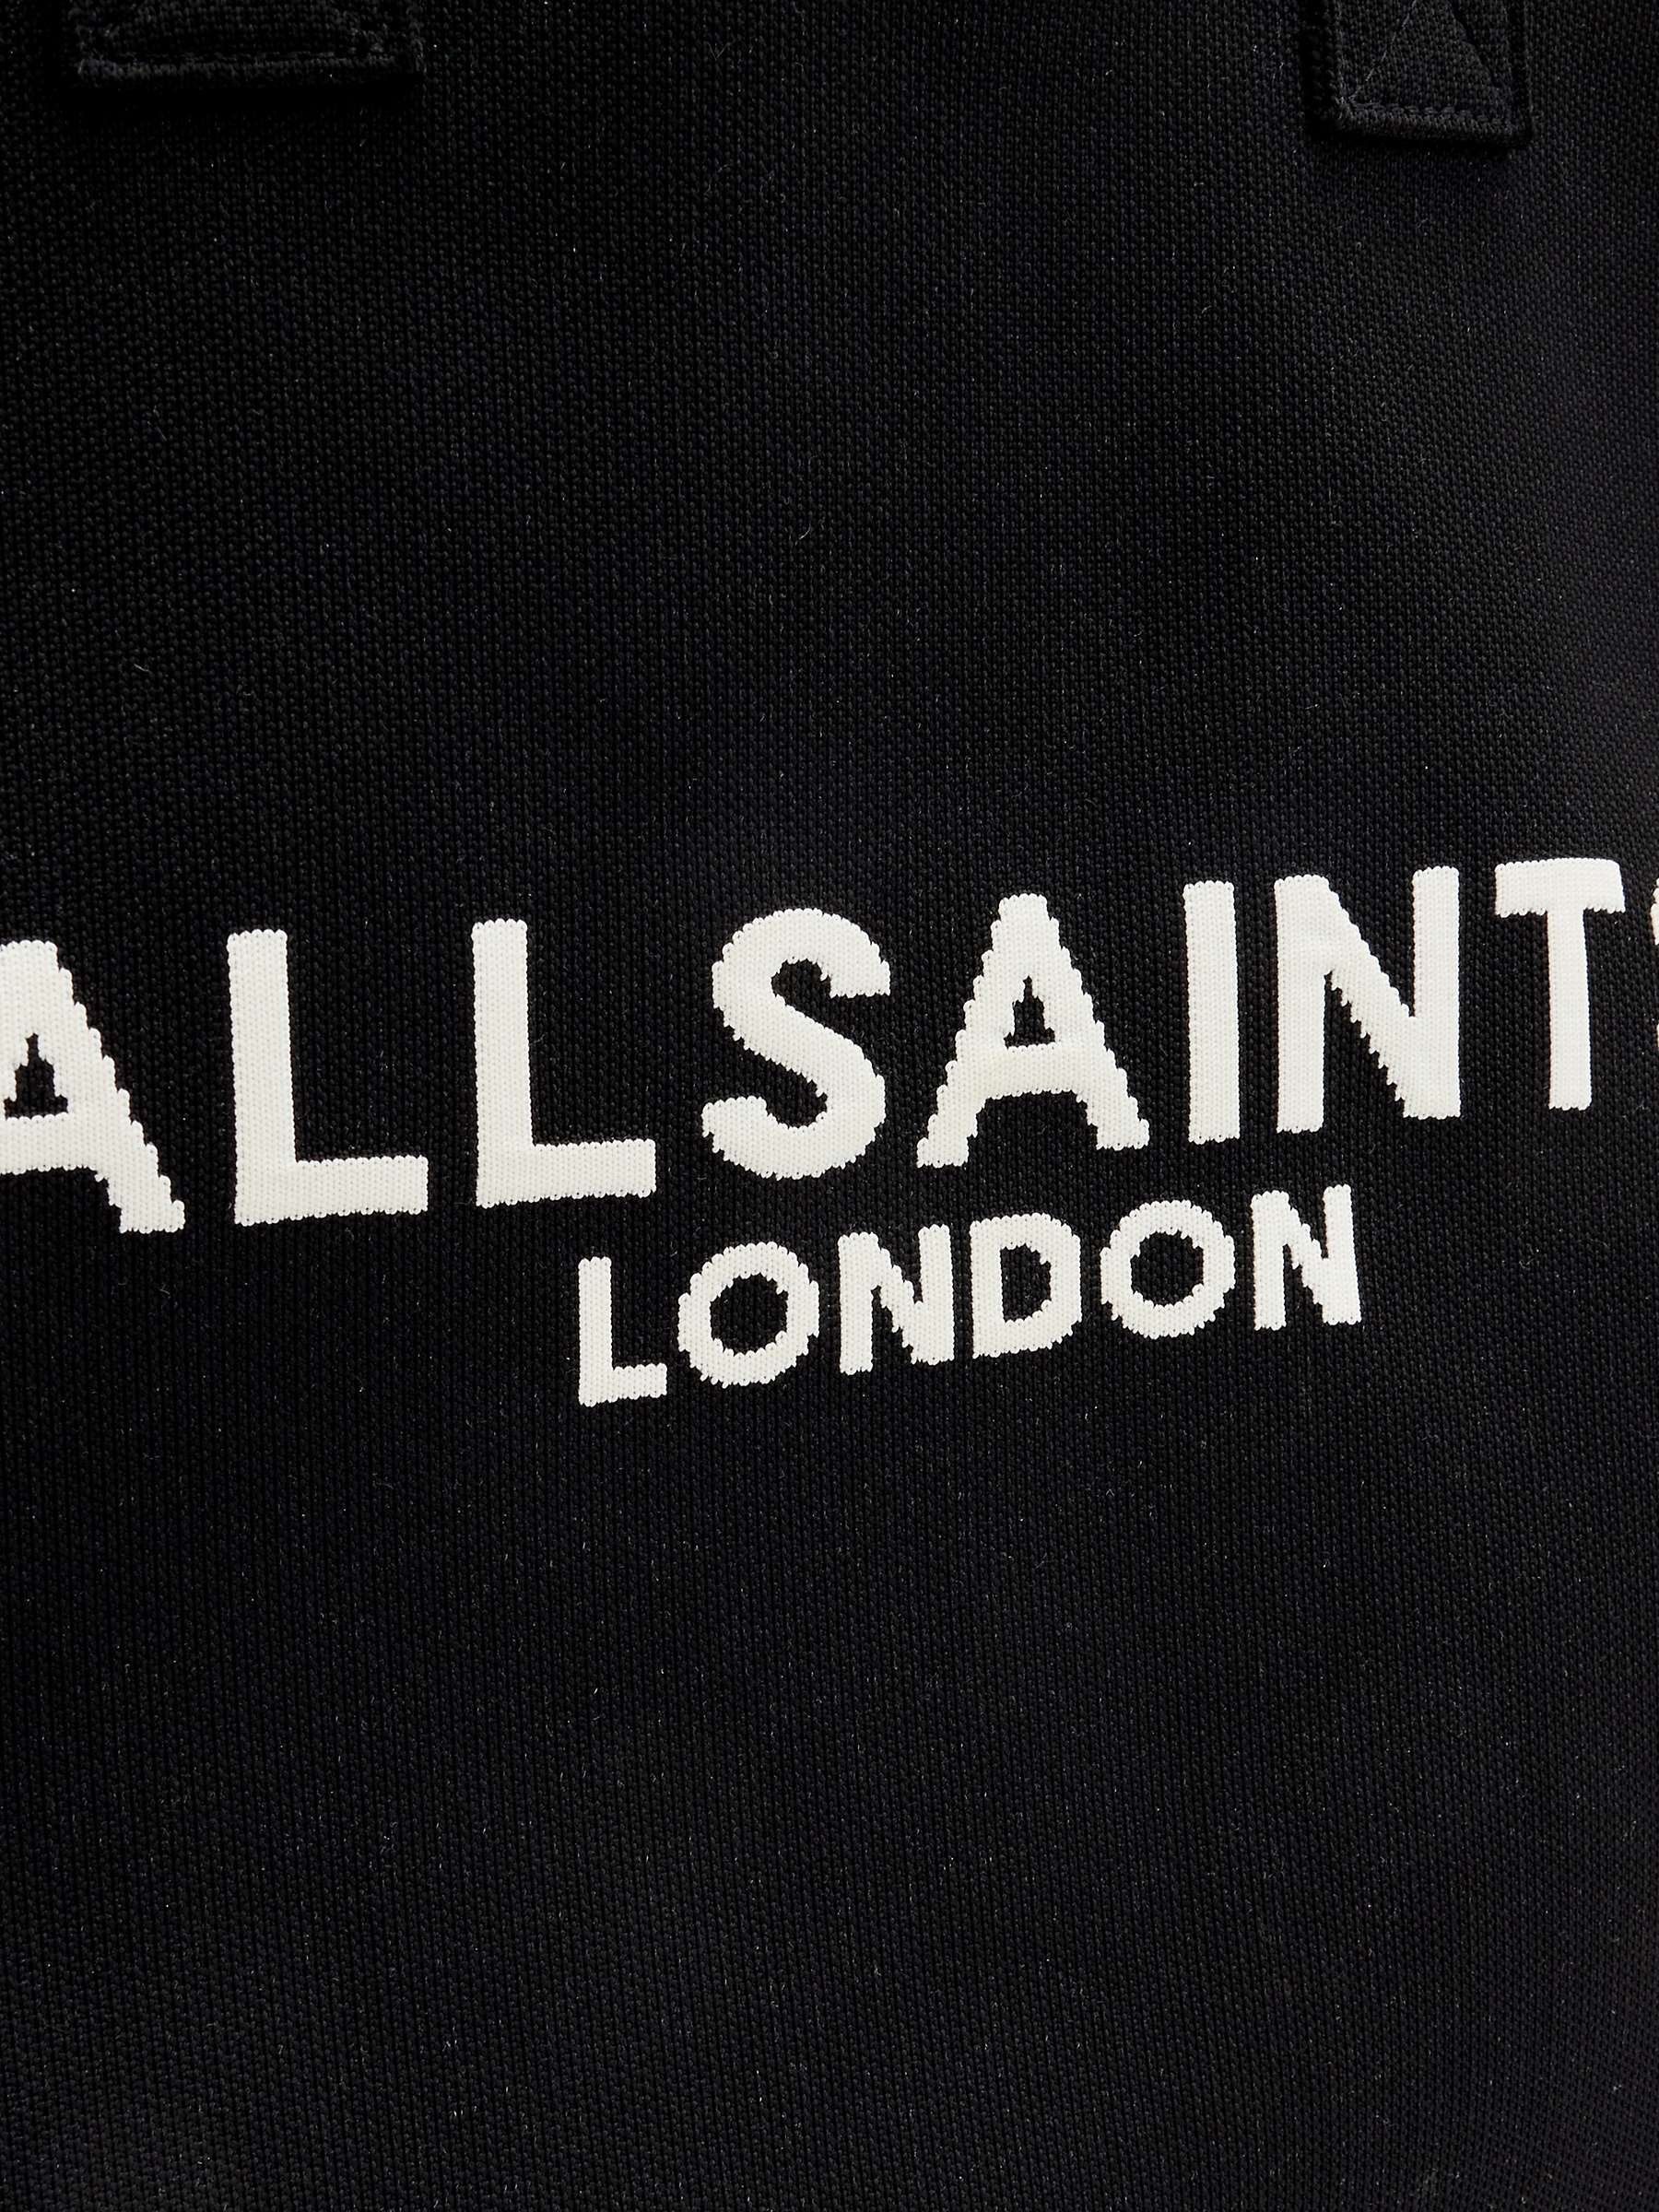 Buy AllSaints Izzy East West Shopper Tote Bag, Black Online at johnlewis.com